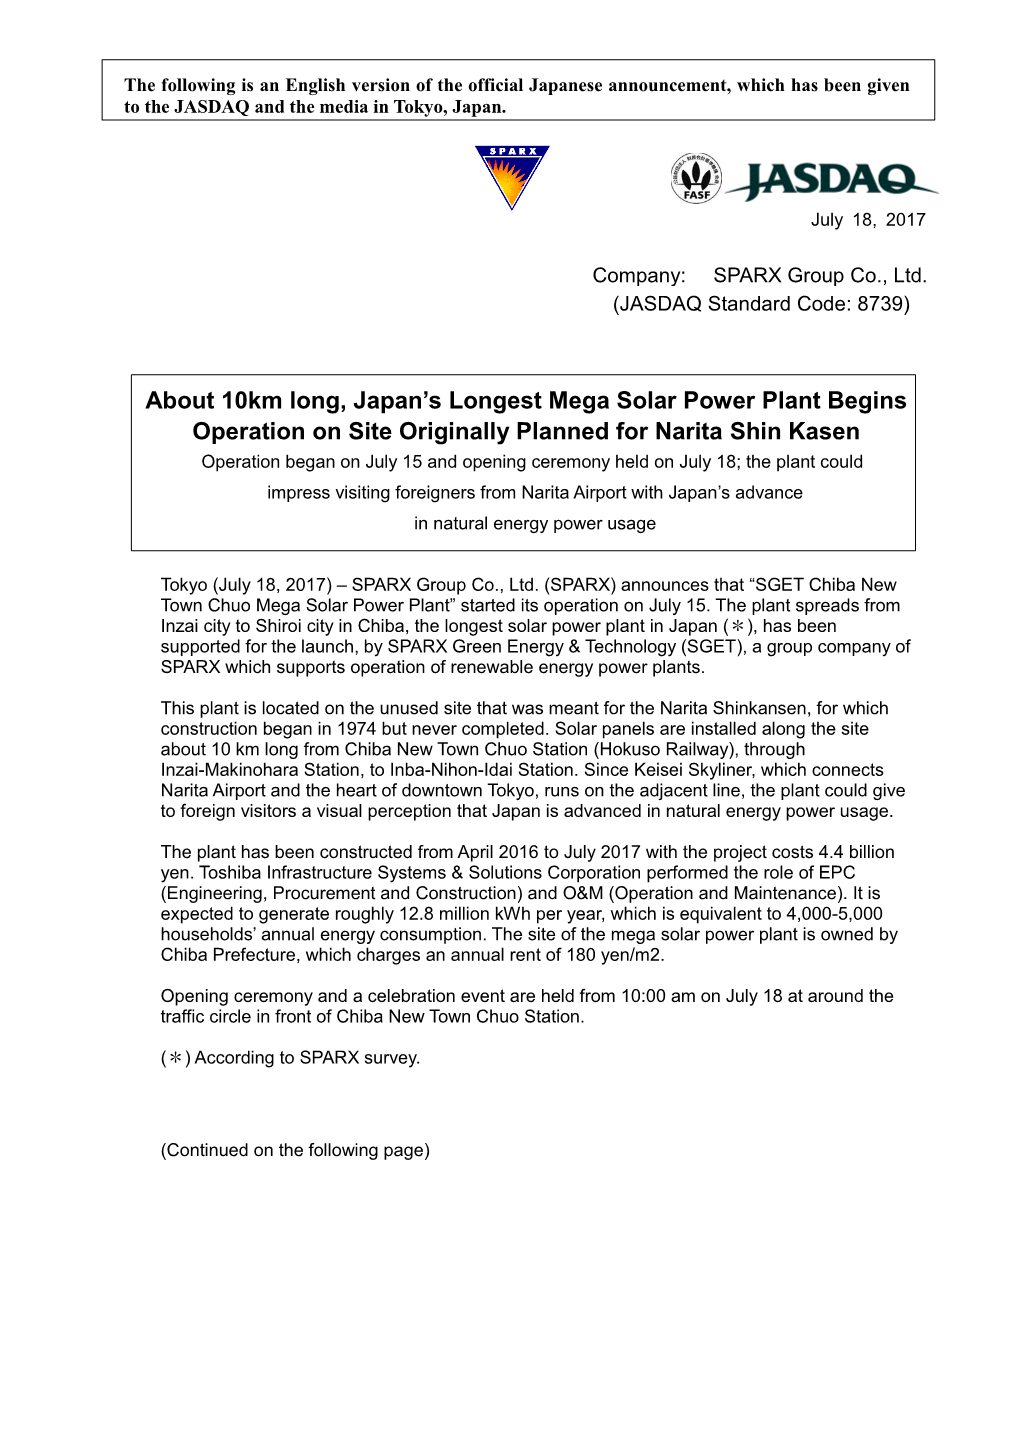 About 10Km Long, Japan's Longest Mega Solar Power Plant Begins